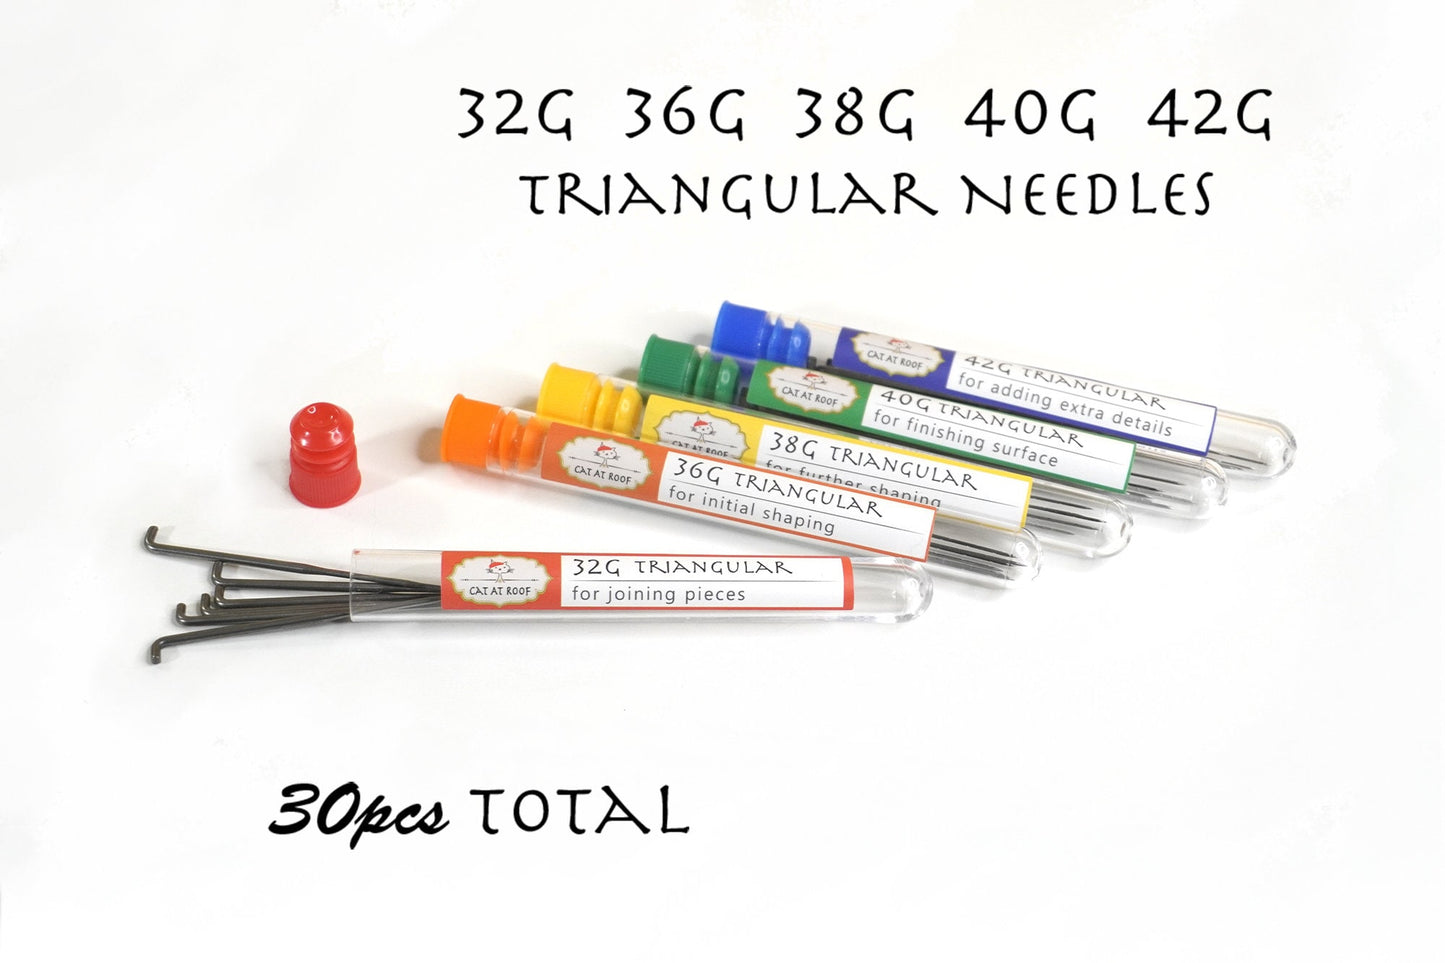 30pcs Triangular Felting Needles Set - 32G, 36G, 38G, 40G, 42G